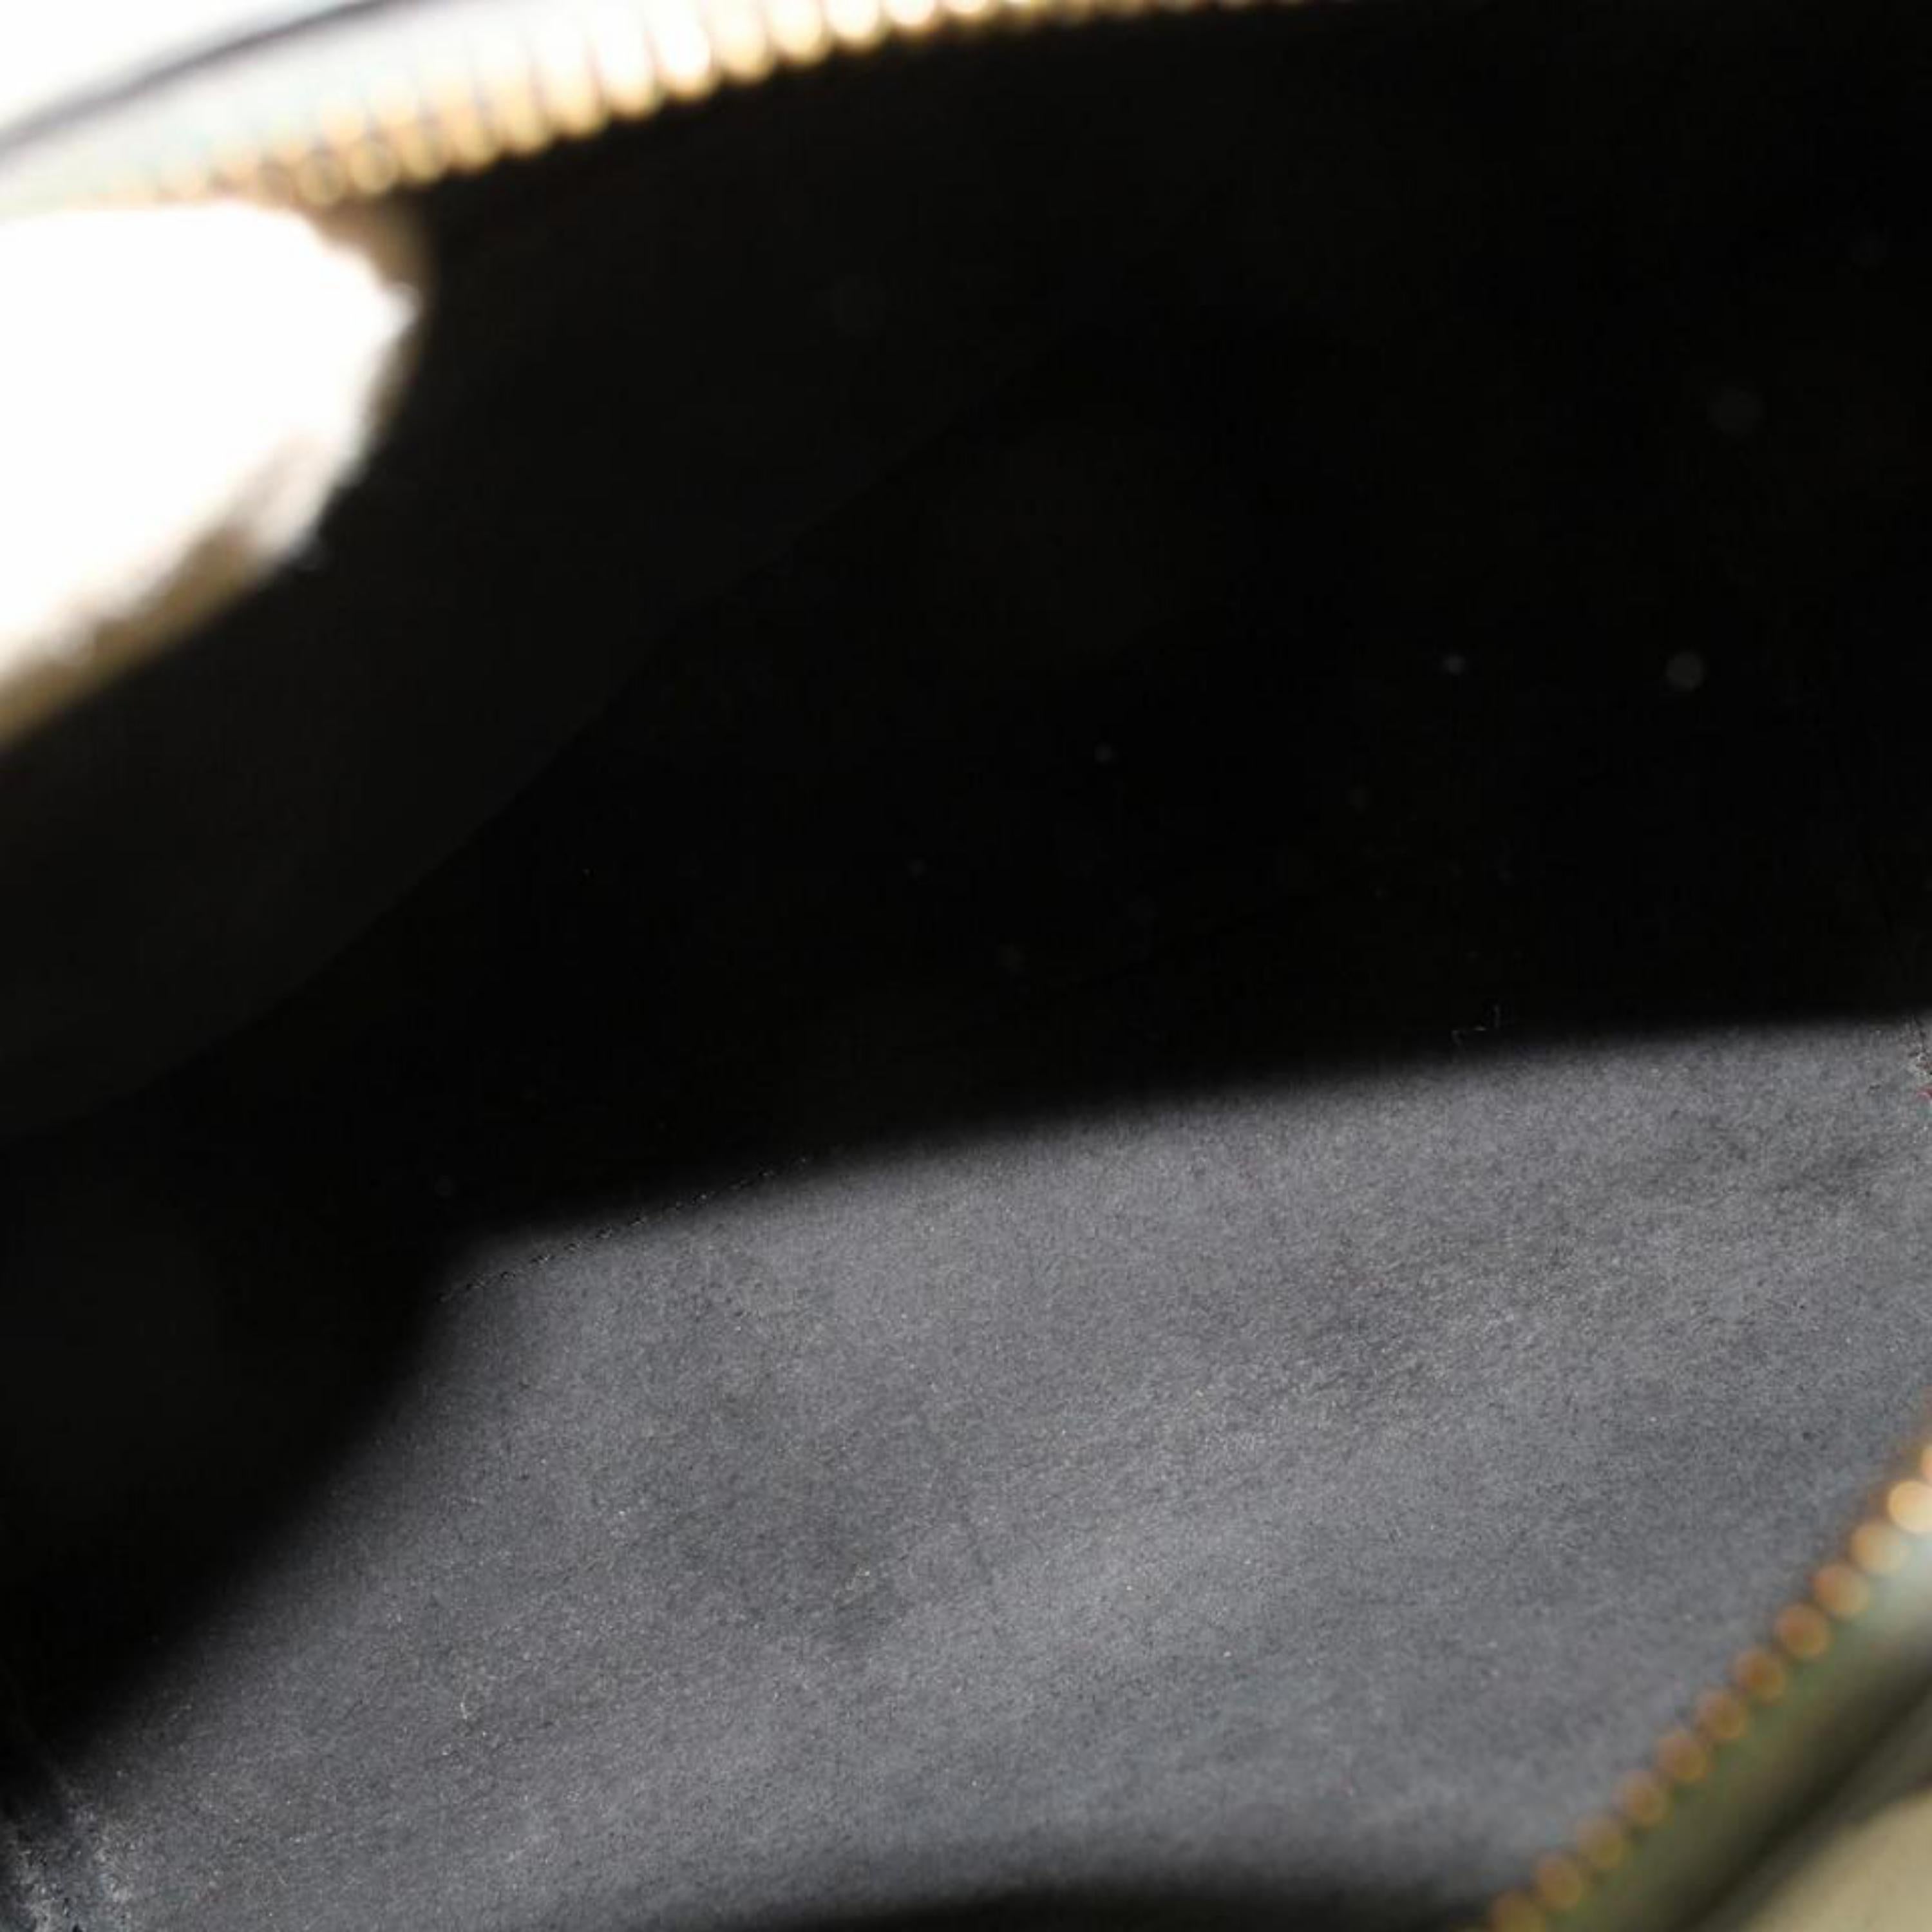 Louis Vuitton Speedy Noir 25 869188 Black Leather Satchel For Sale 8